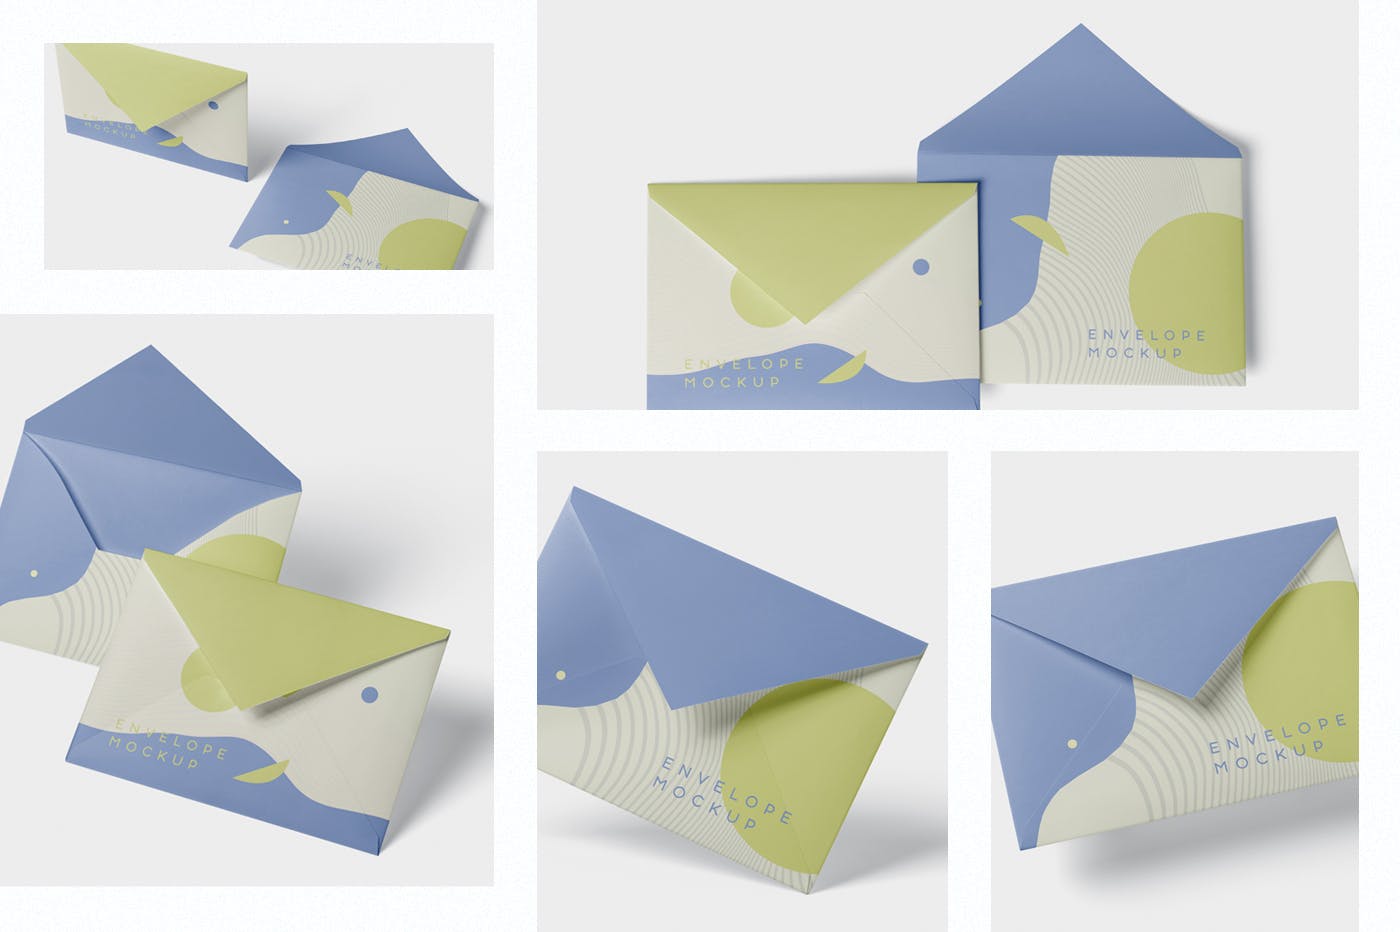 高端企业信封外观设计图蚂蚁素材精选模板 Envelope C5 – C6 Mock-Up Set插图(1)